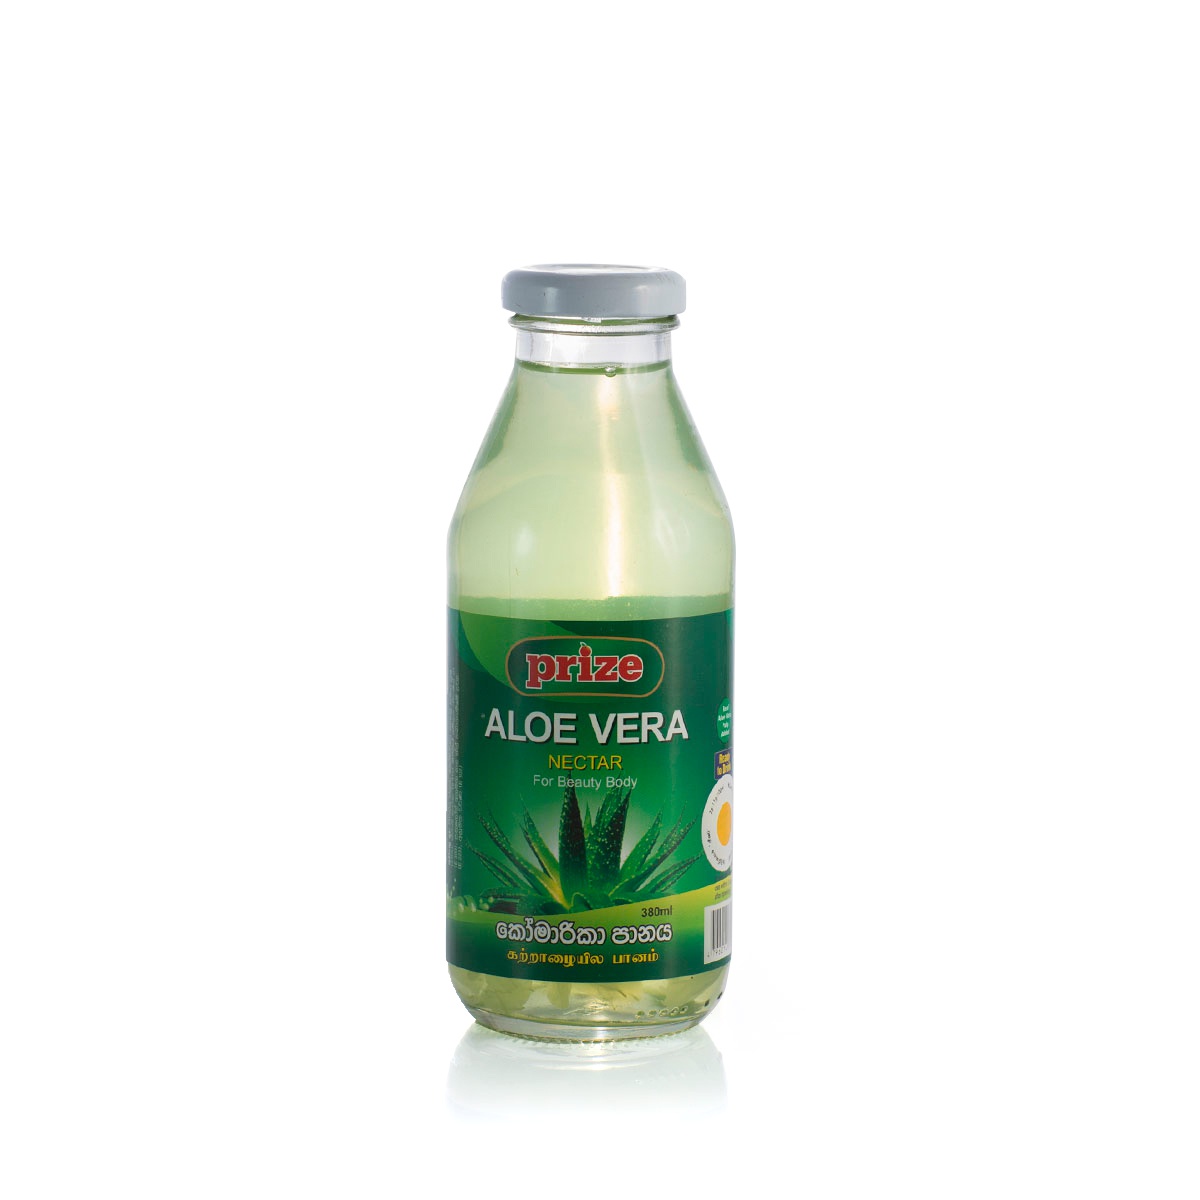 Prize Aloe Vera Nectar 380Ml - PRIZE - Rtd Single Consumption - in Sri Lanka